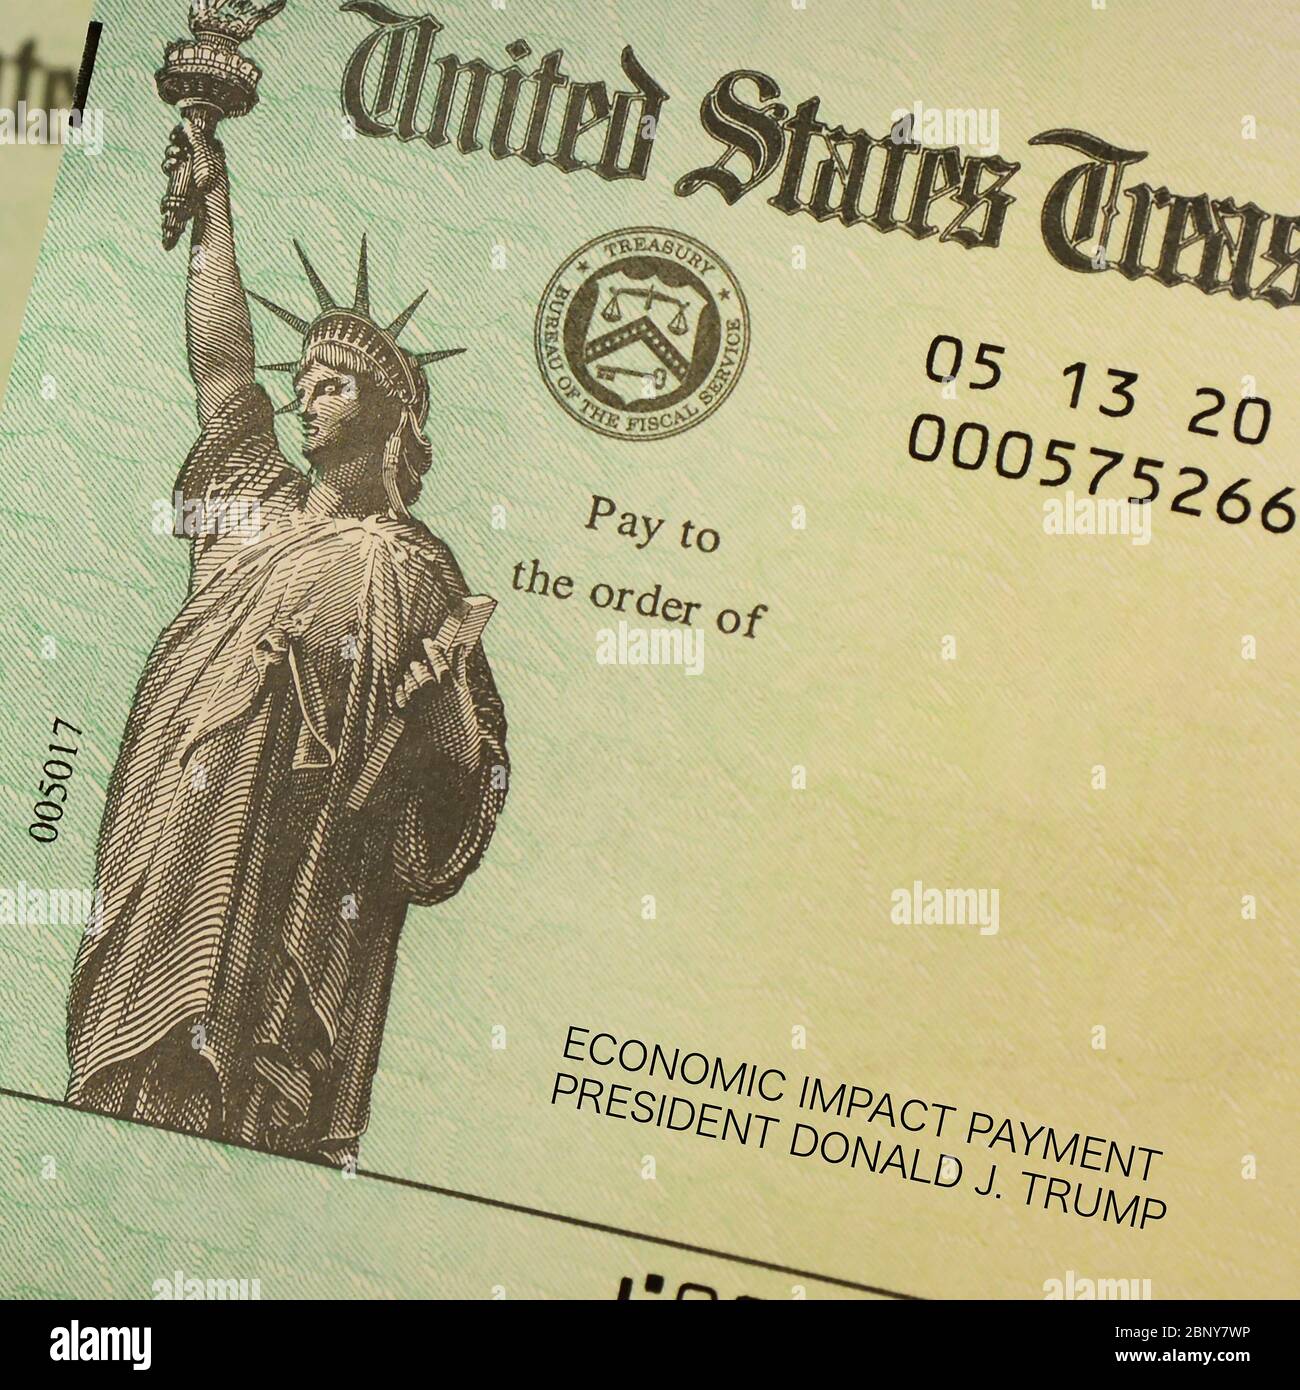 Un primer plano de un cheque del Tesoro de Estados Unidos, pago por impacto económico del presidente Donald Trump, no se le hizo pagar a nadie Foto de stock